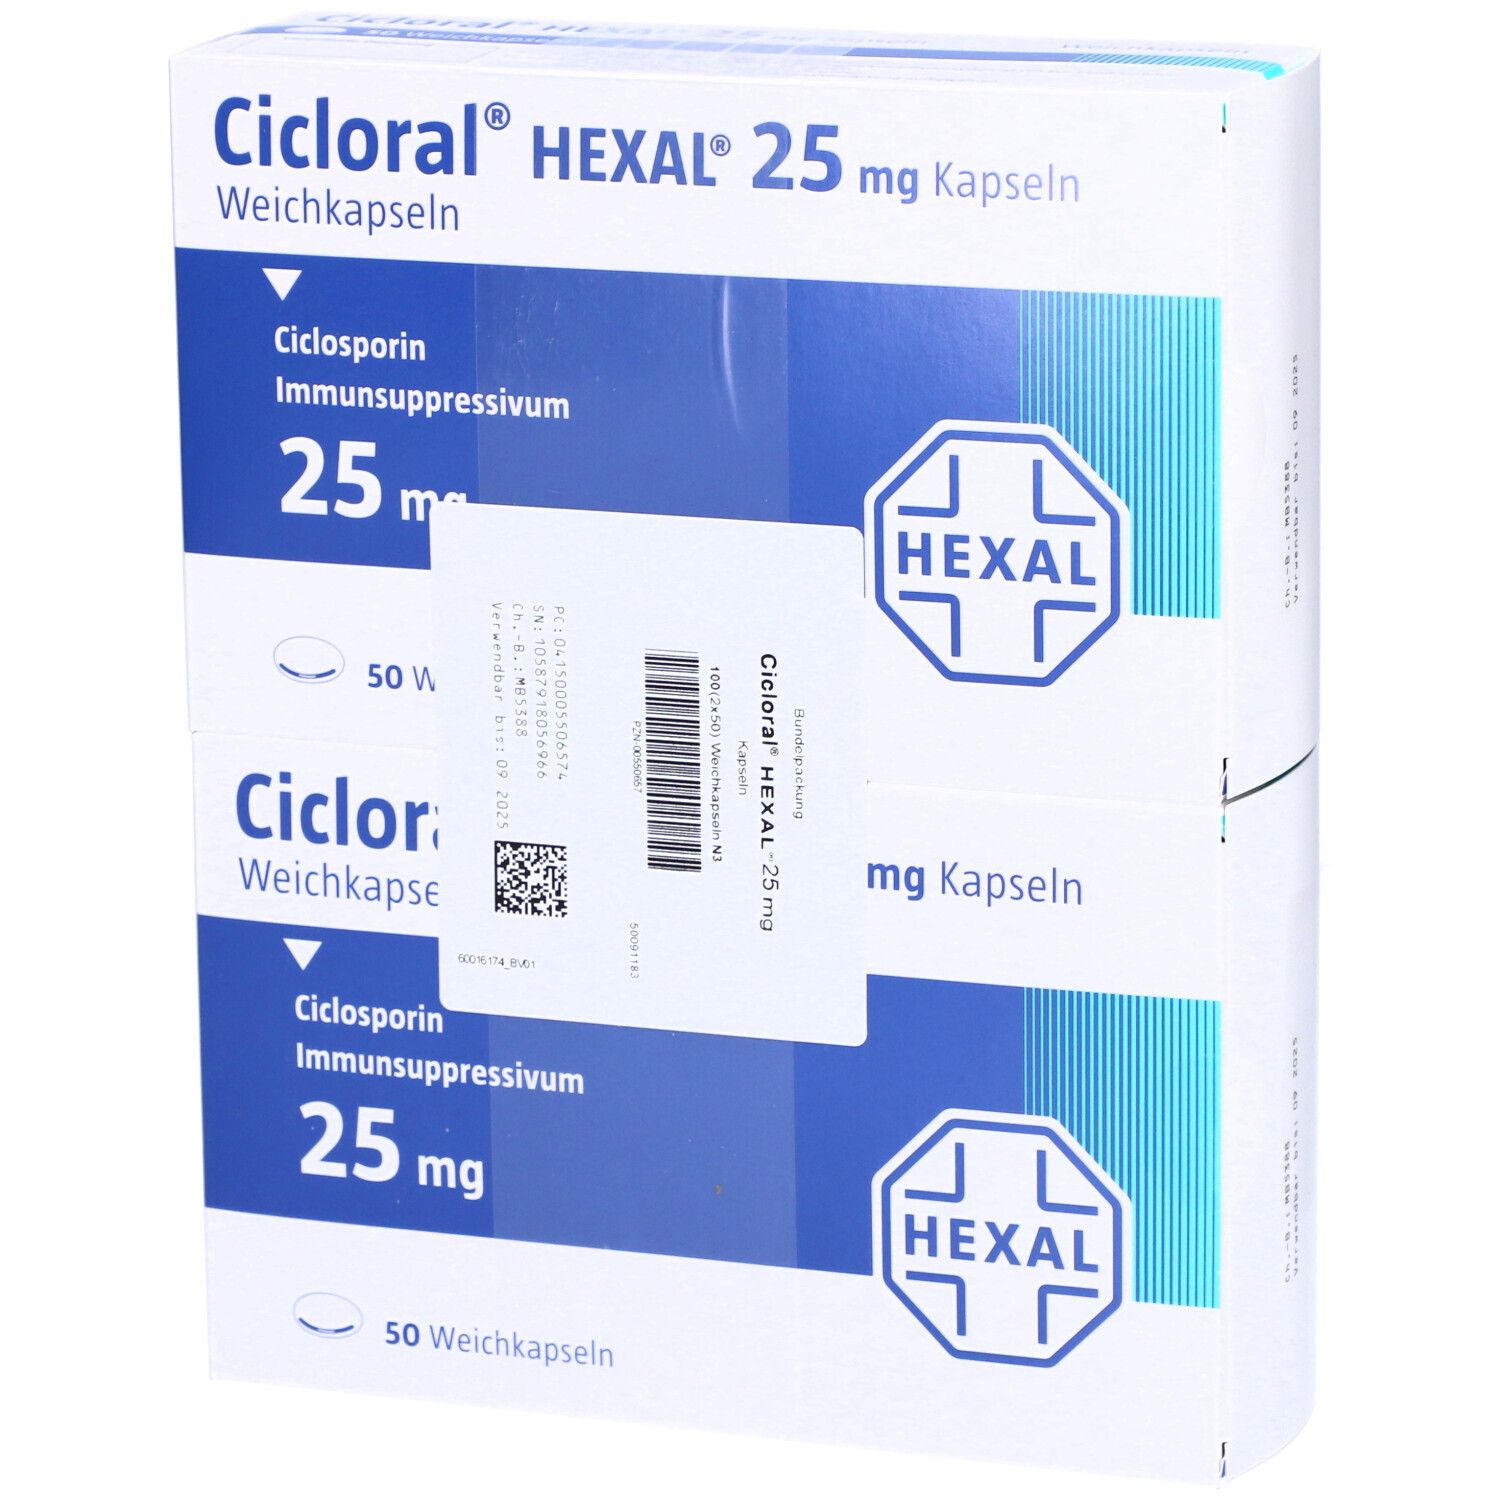 Cicloral® HEXAL® 25 mg